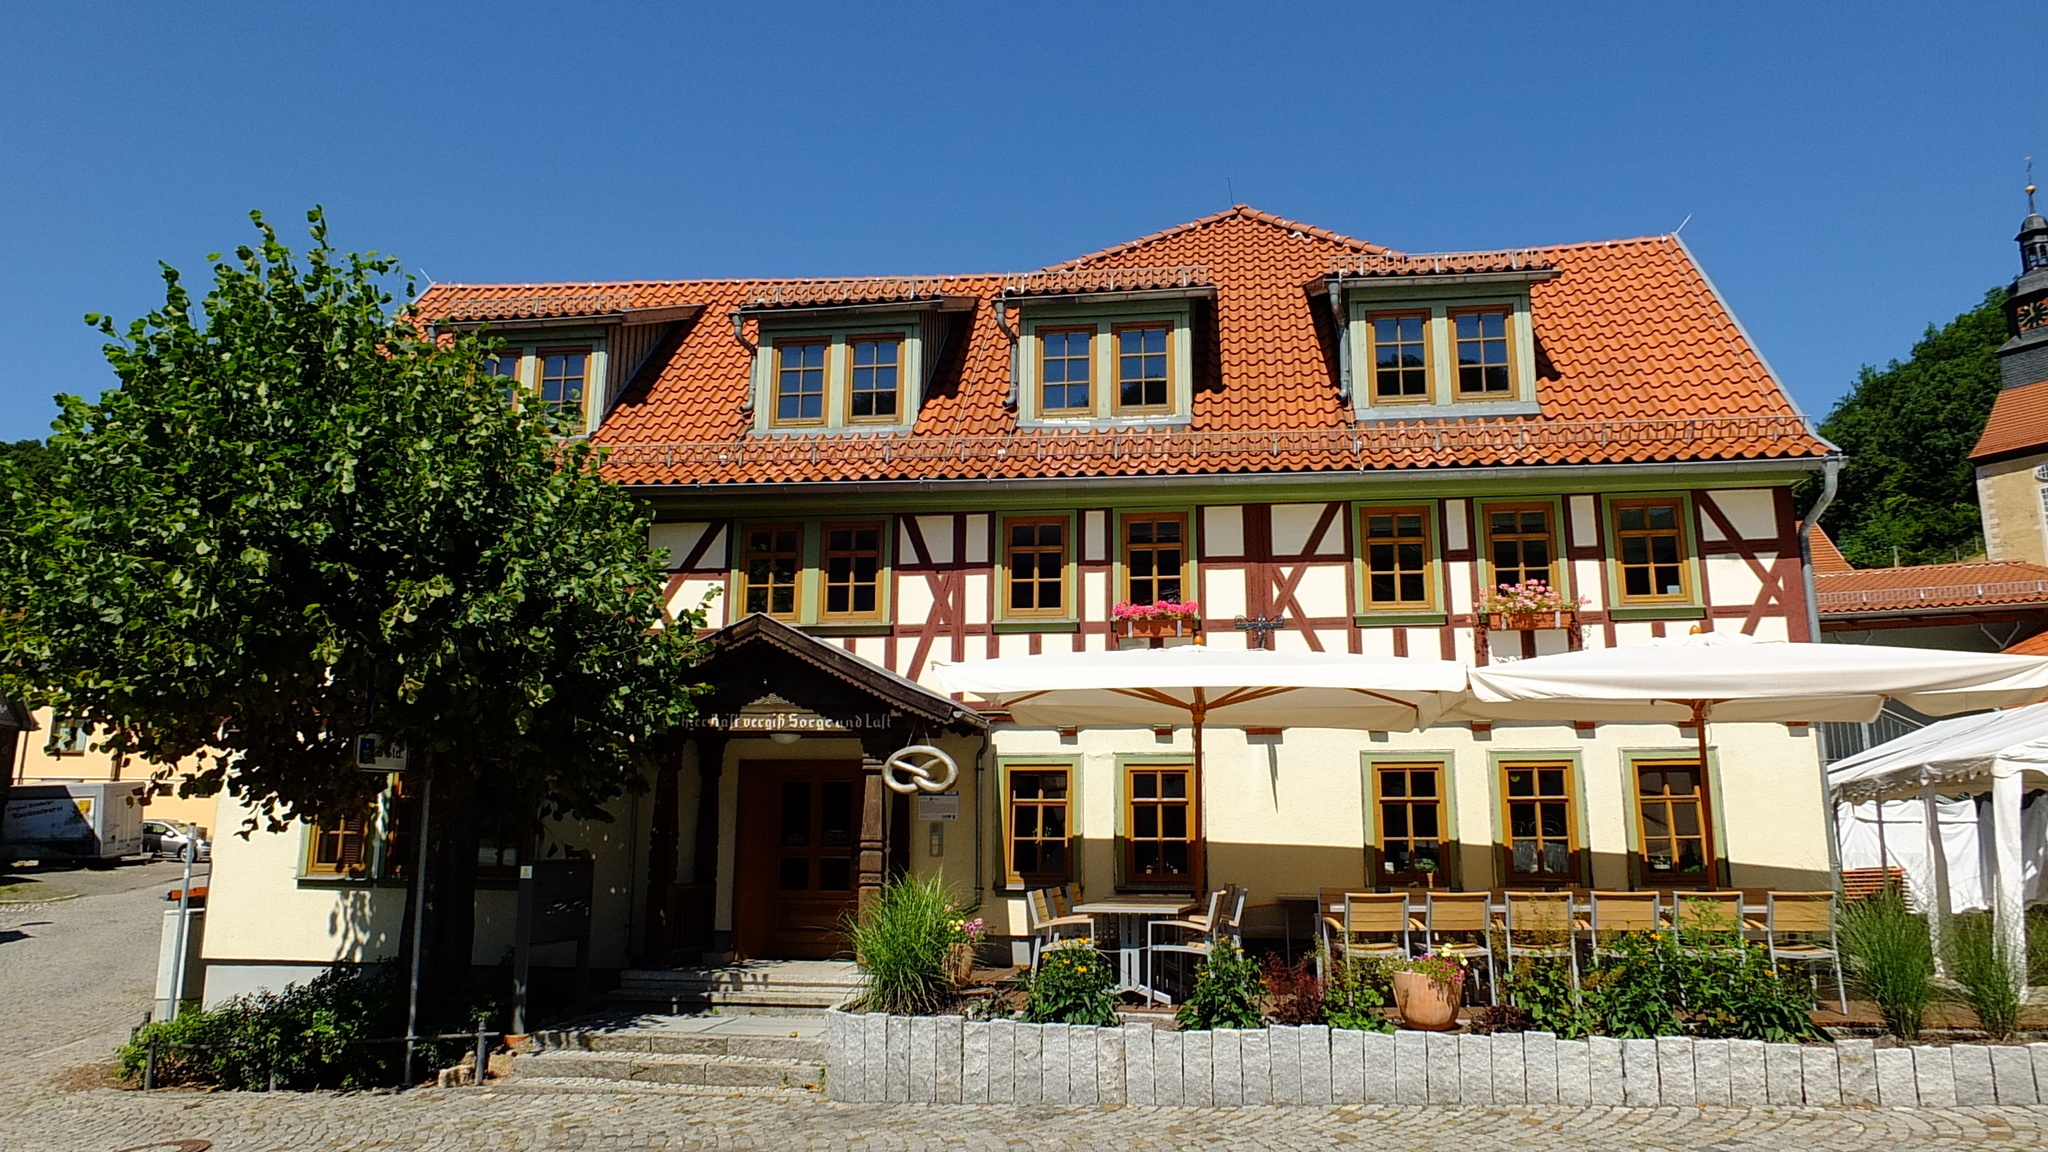 Grüner Baum Steinbach - Café Messerstübchen, Thüringer Wald Shop und Saal